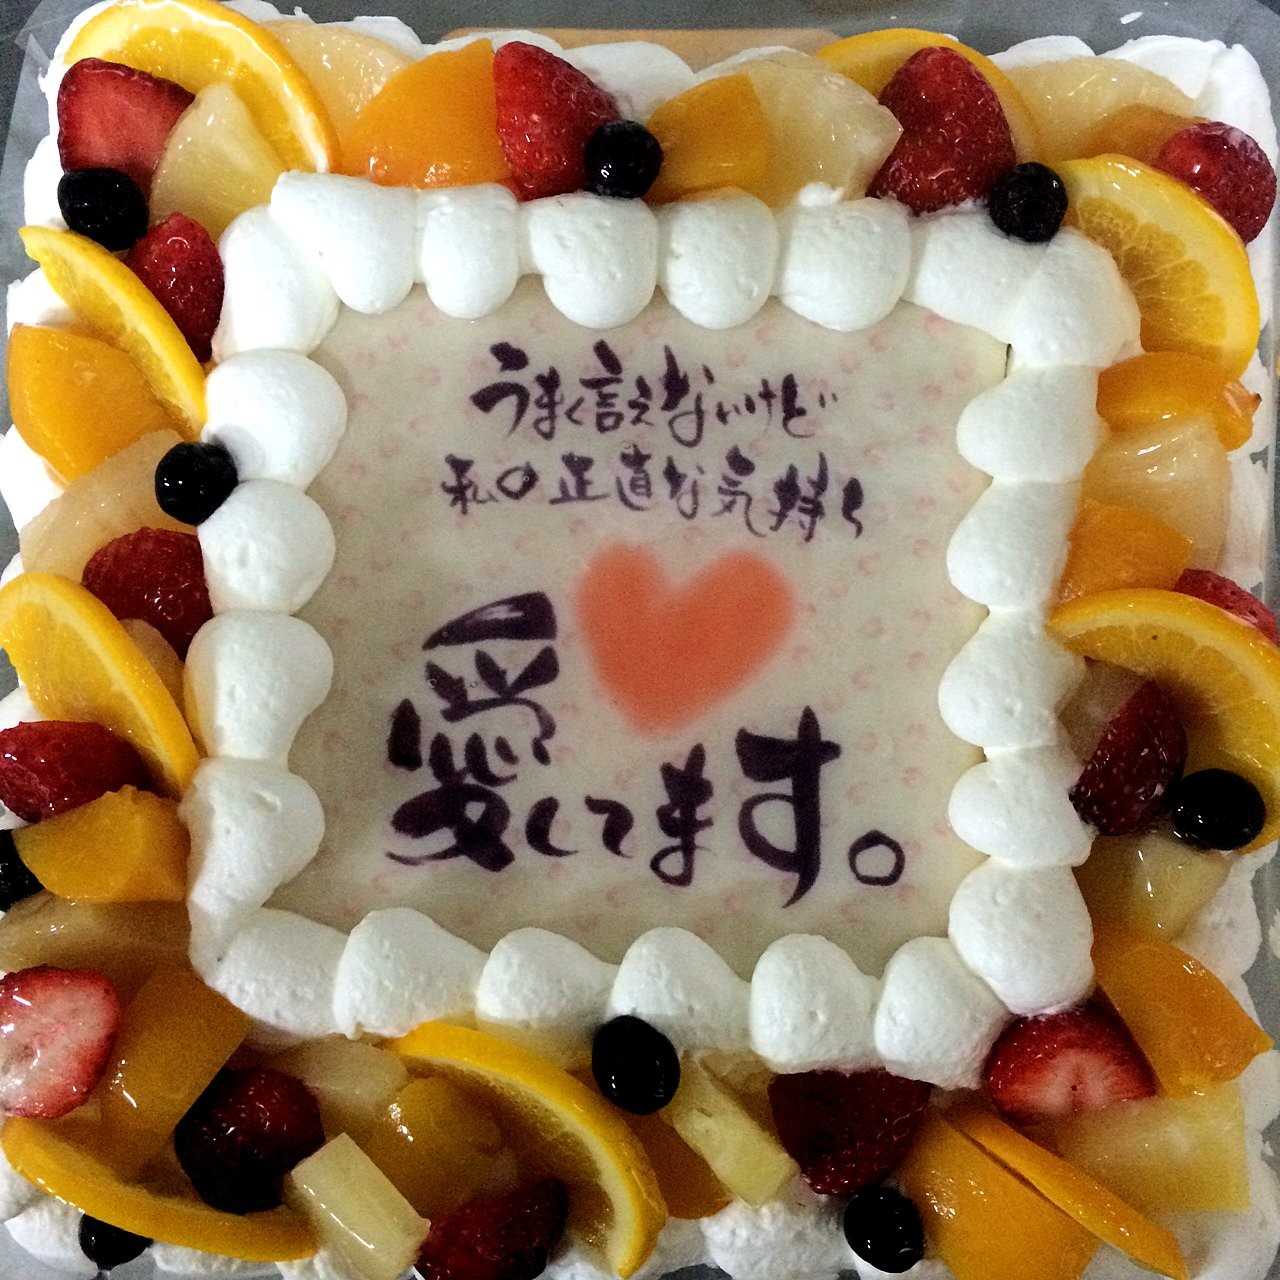 バレンタイン21 バレンタインケーキ 15cm 15cm 洋菓子のミロ Cake Jp